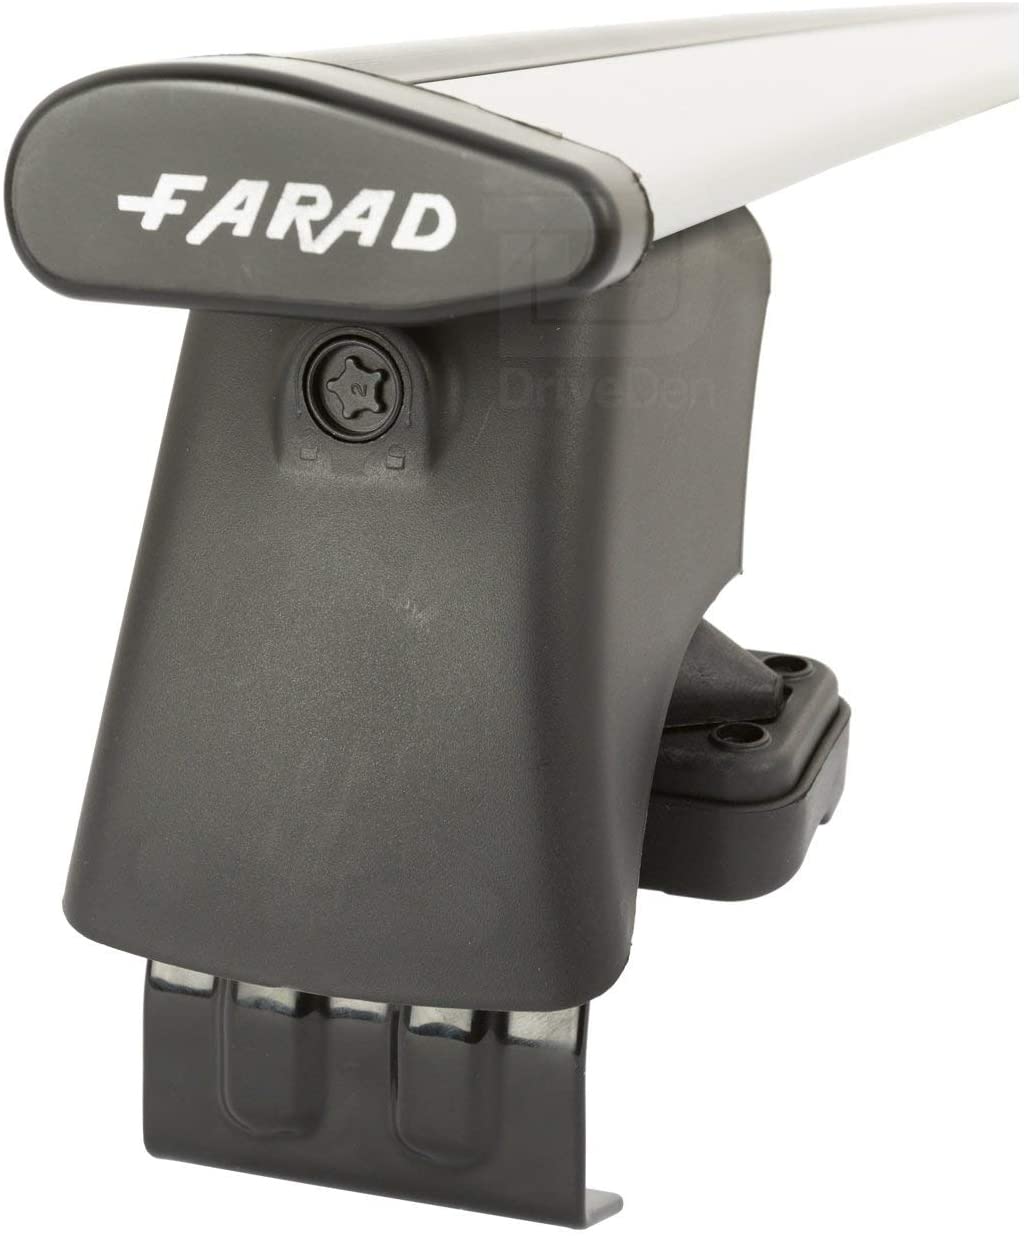 FARAD-Kit H2 per barre portatutto - Kia Rio 2017> (senza corrimano)